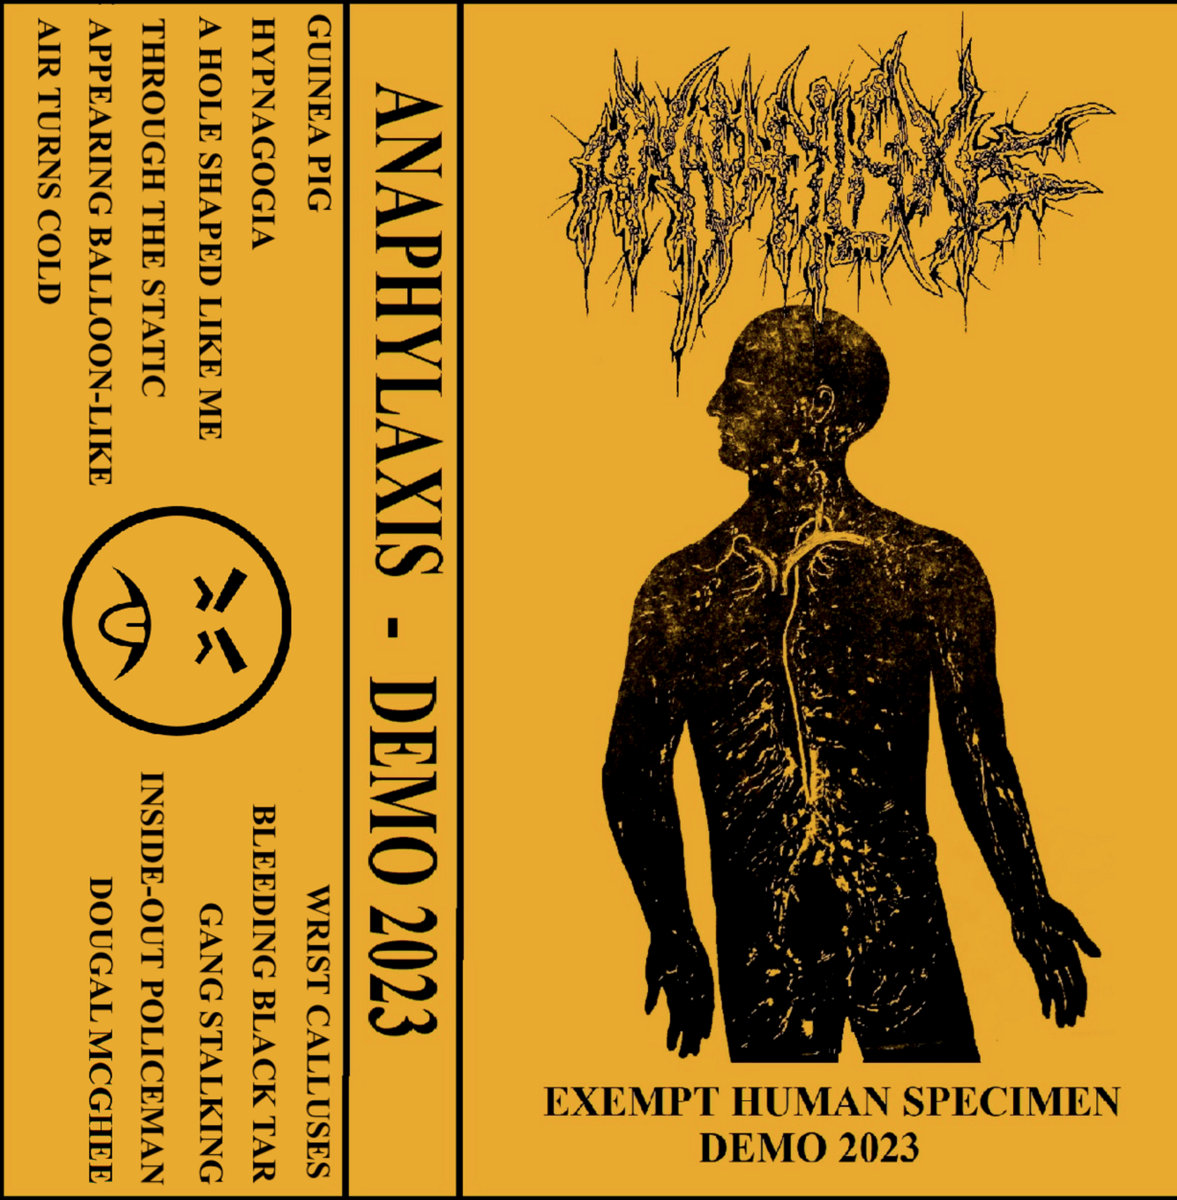 Anaphylaxis - "Exempt Human Specimen" Demo - 2023